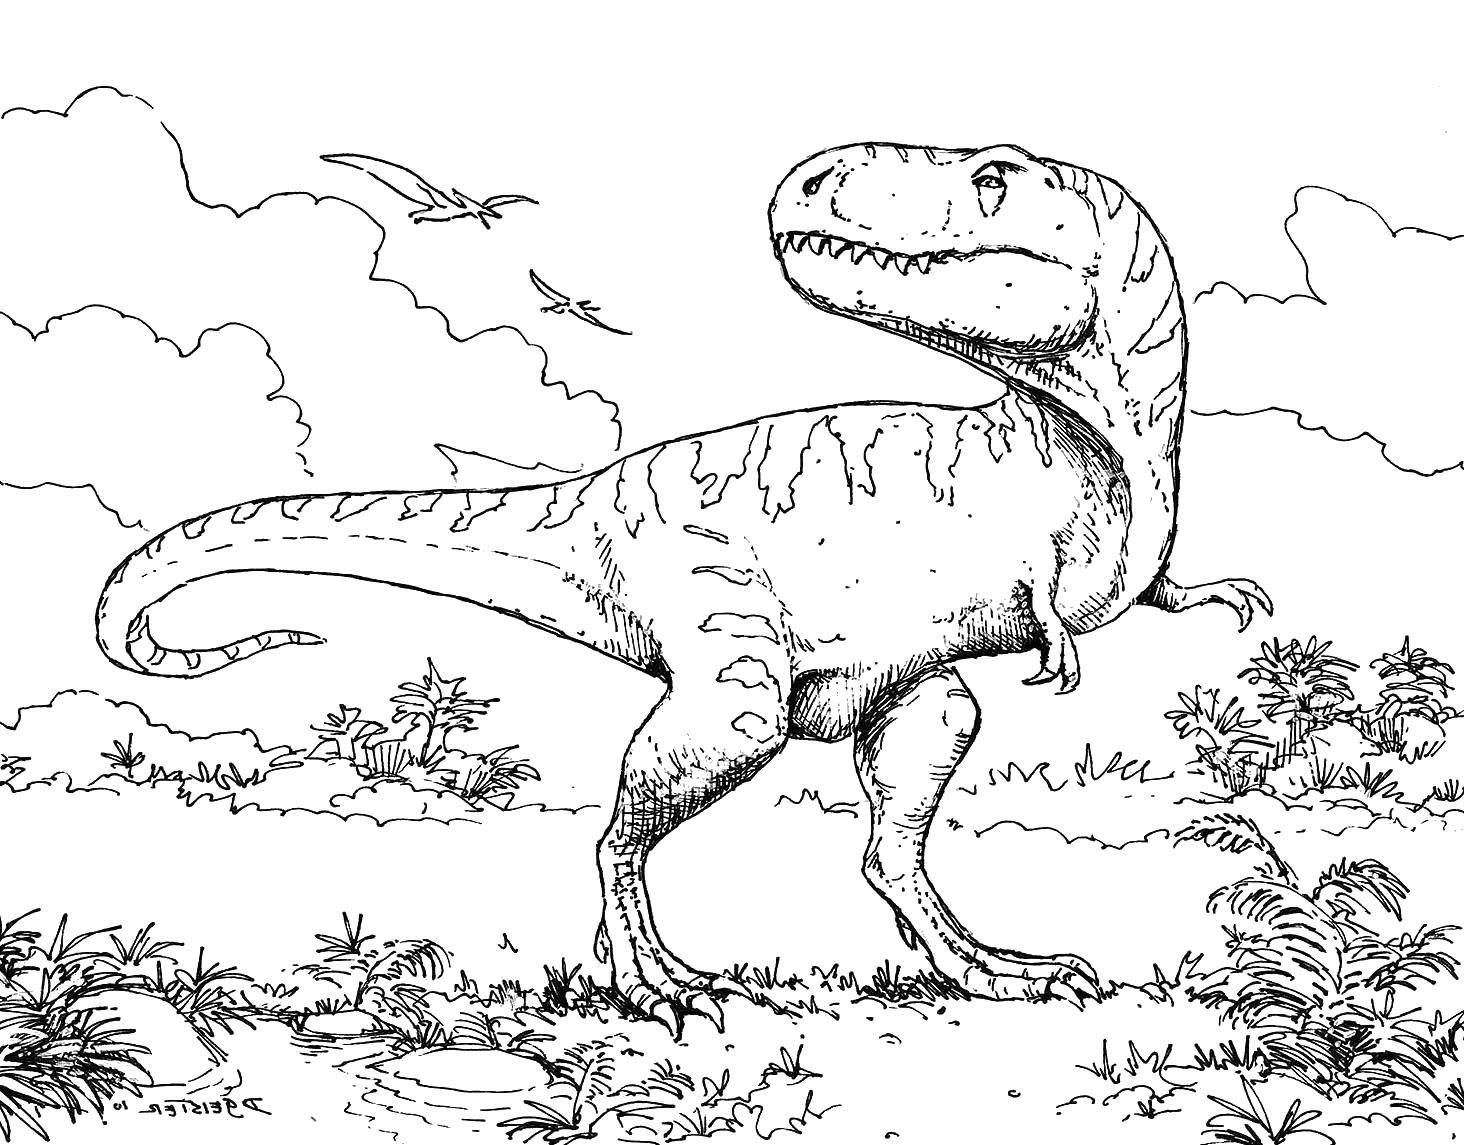 Coloring Tyrannosaurus Rex. Category dinosaur. Tags:  Dinosaurs, Tyrannosaurus.